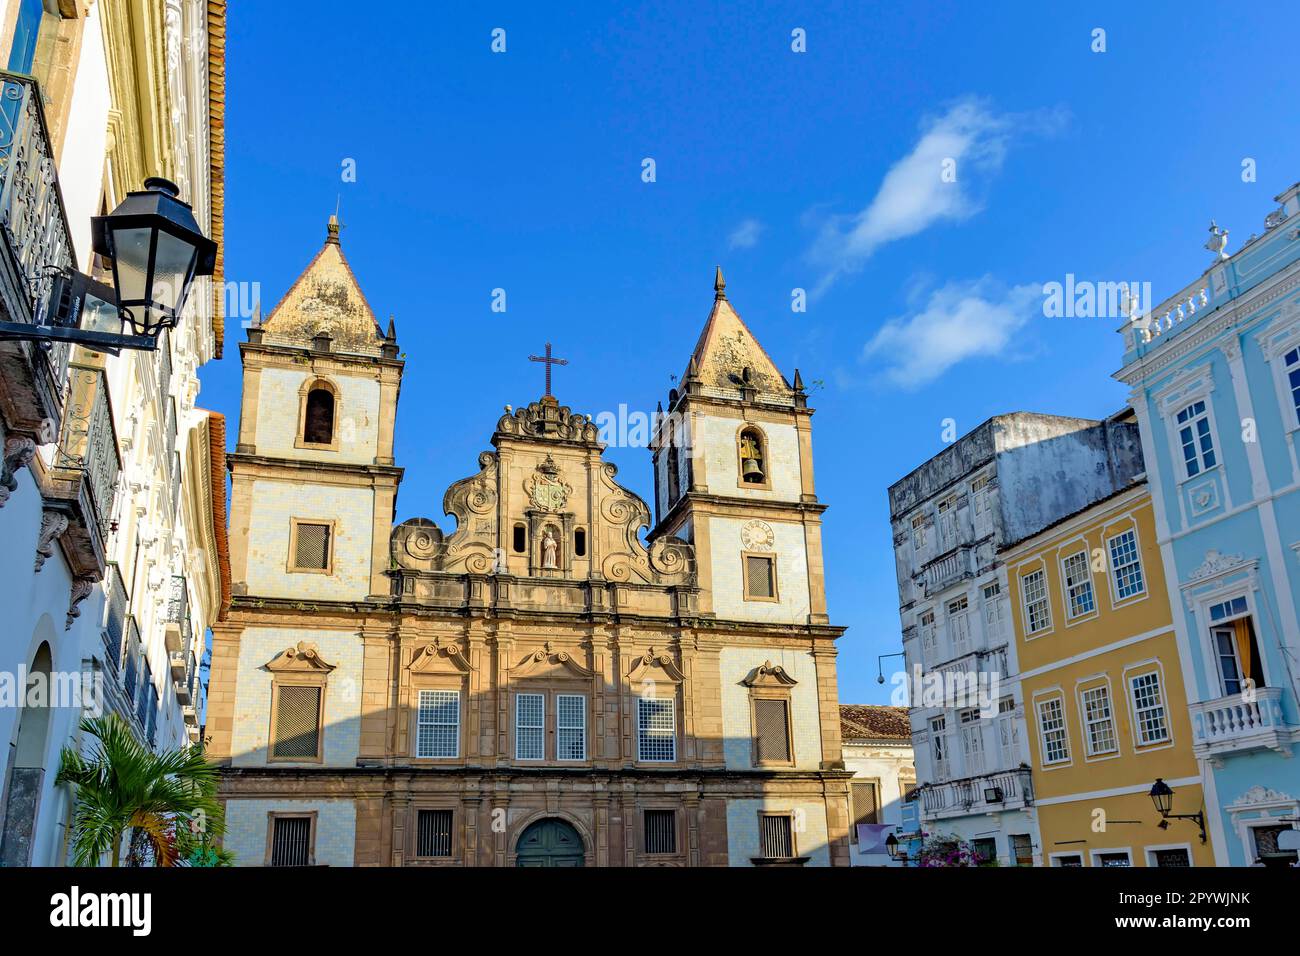 Alte und historische Kirchenfassade am zentralen Platz des Viertels Pelourinho in Salvador, Bahia, Nordostregion Brasiliens, Brasilien Stockfoto